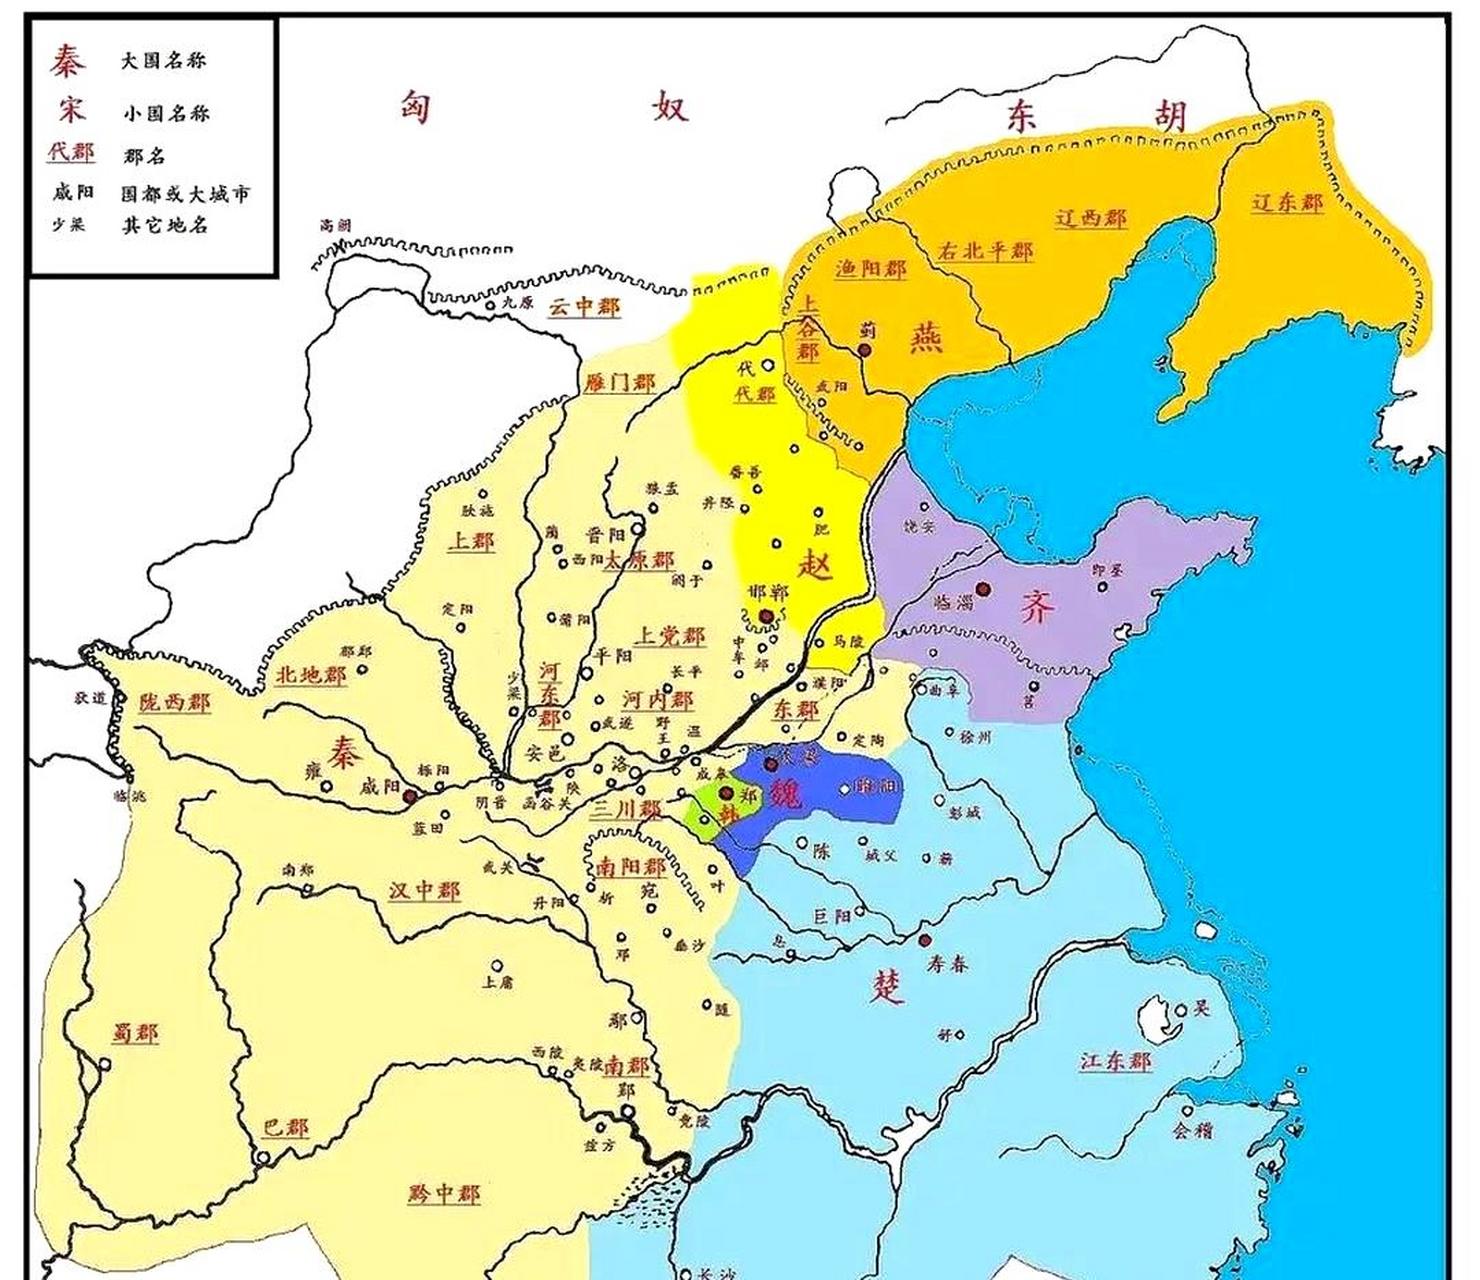 嬴政登基后,秦国的疆域得到了扩张